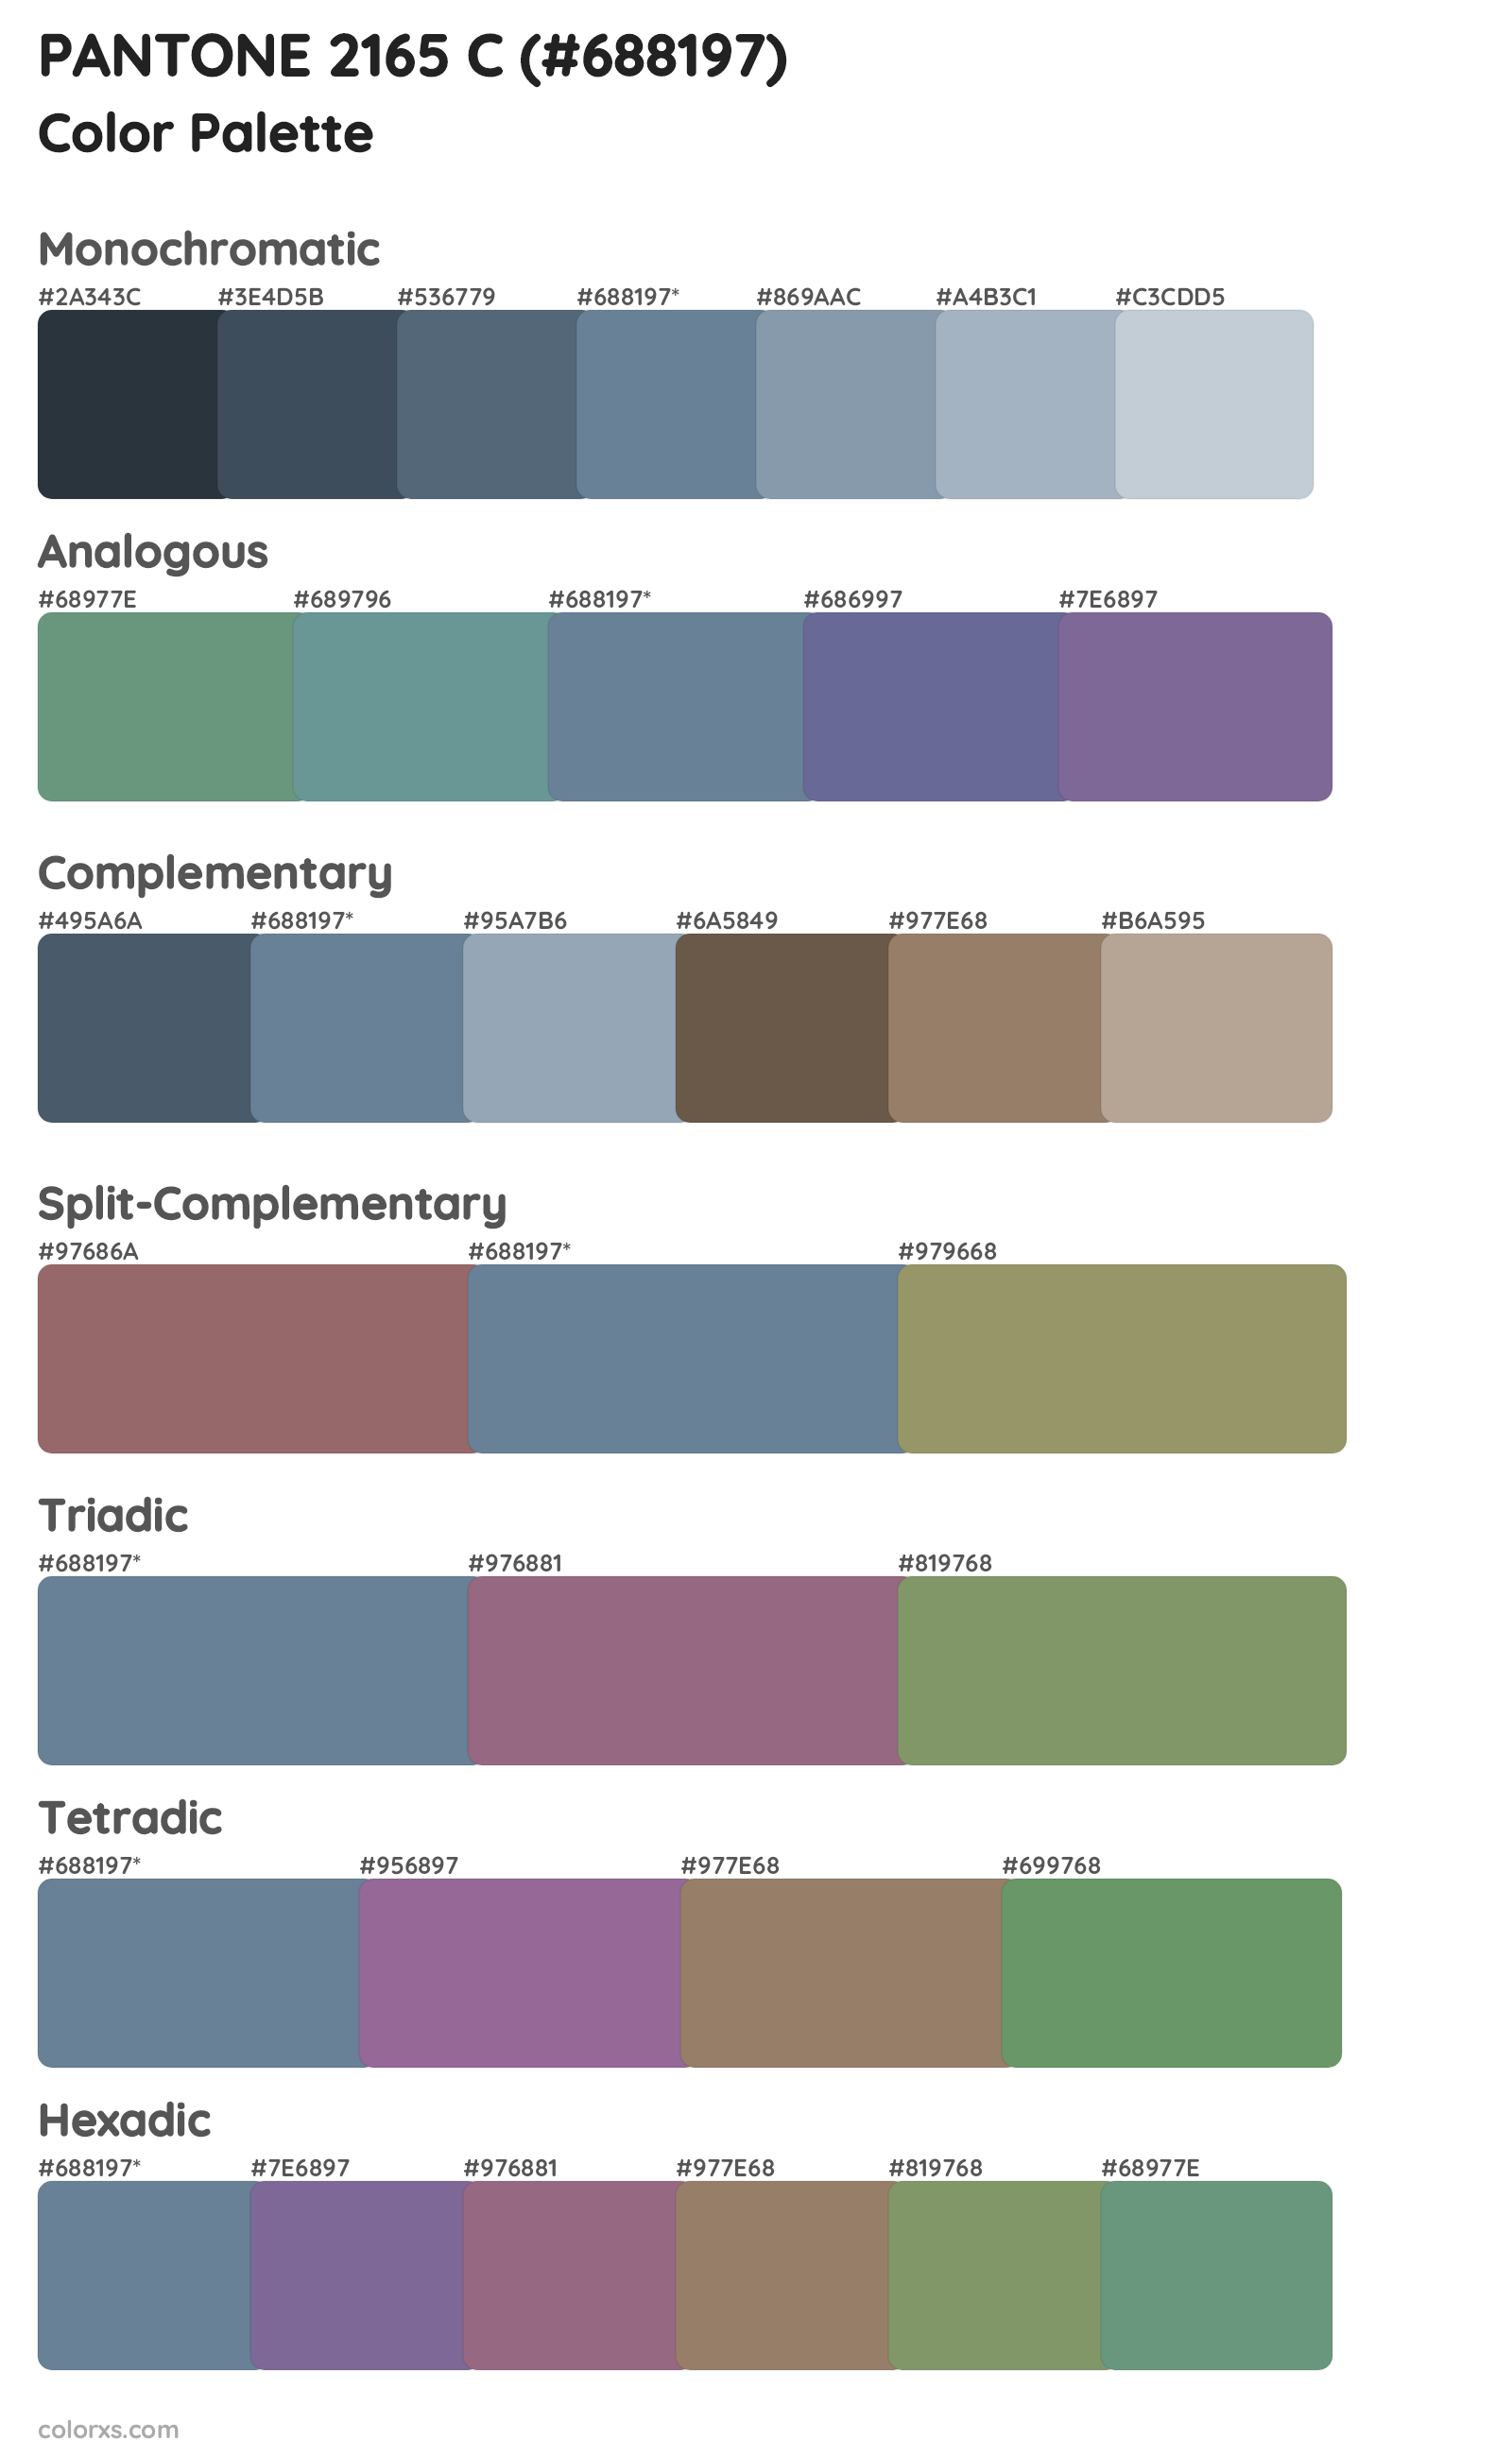 PANTONE 2165 C Color Scheme Palettes